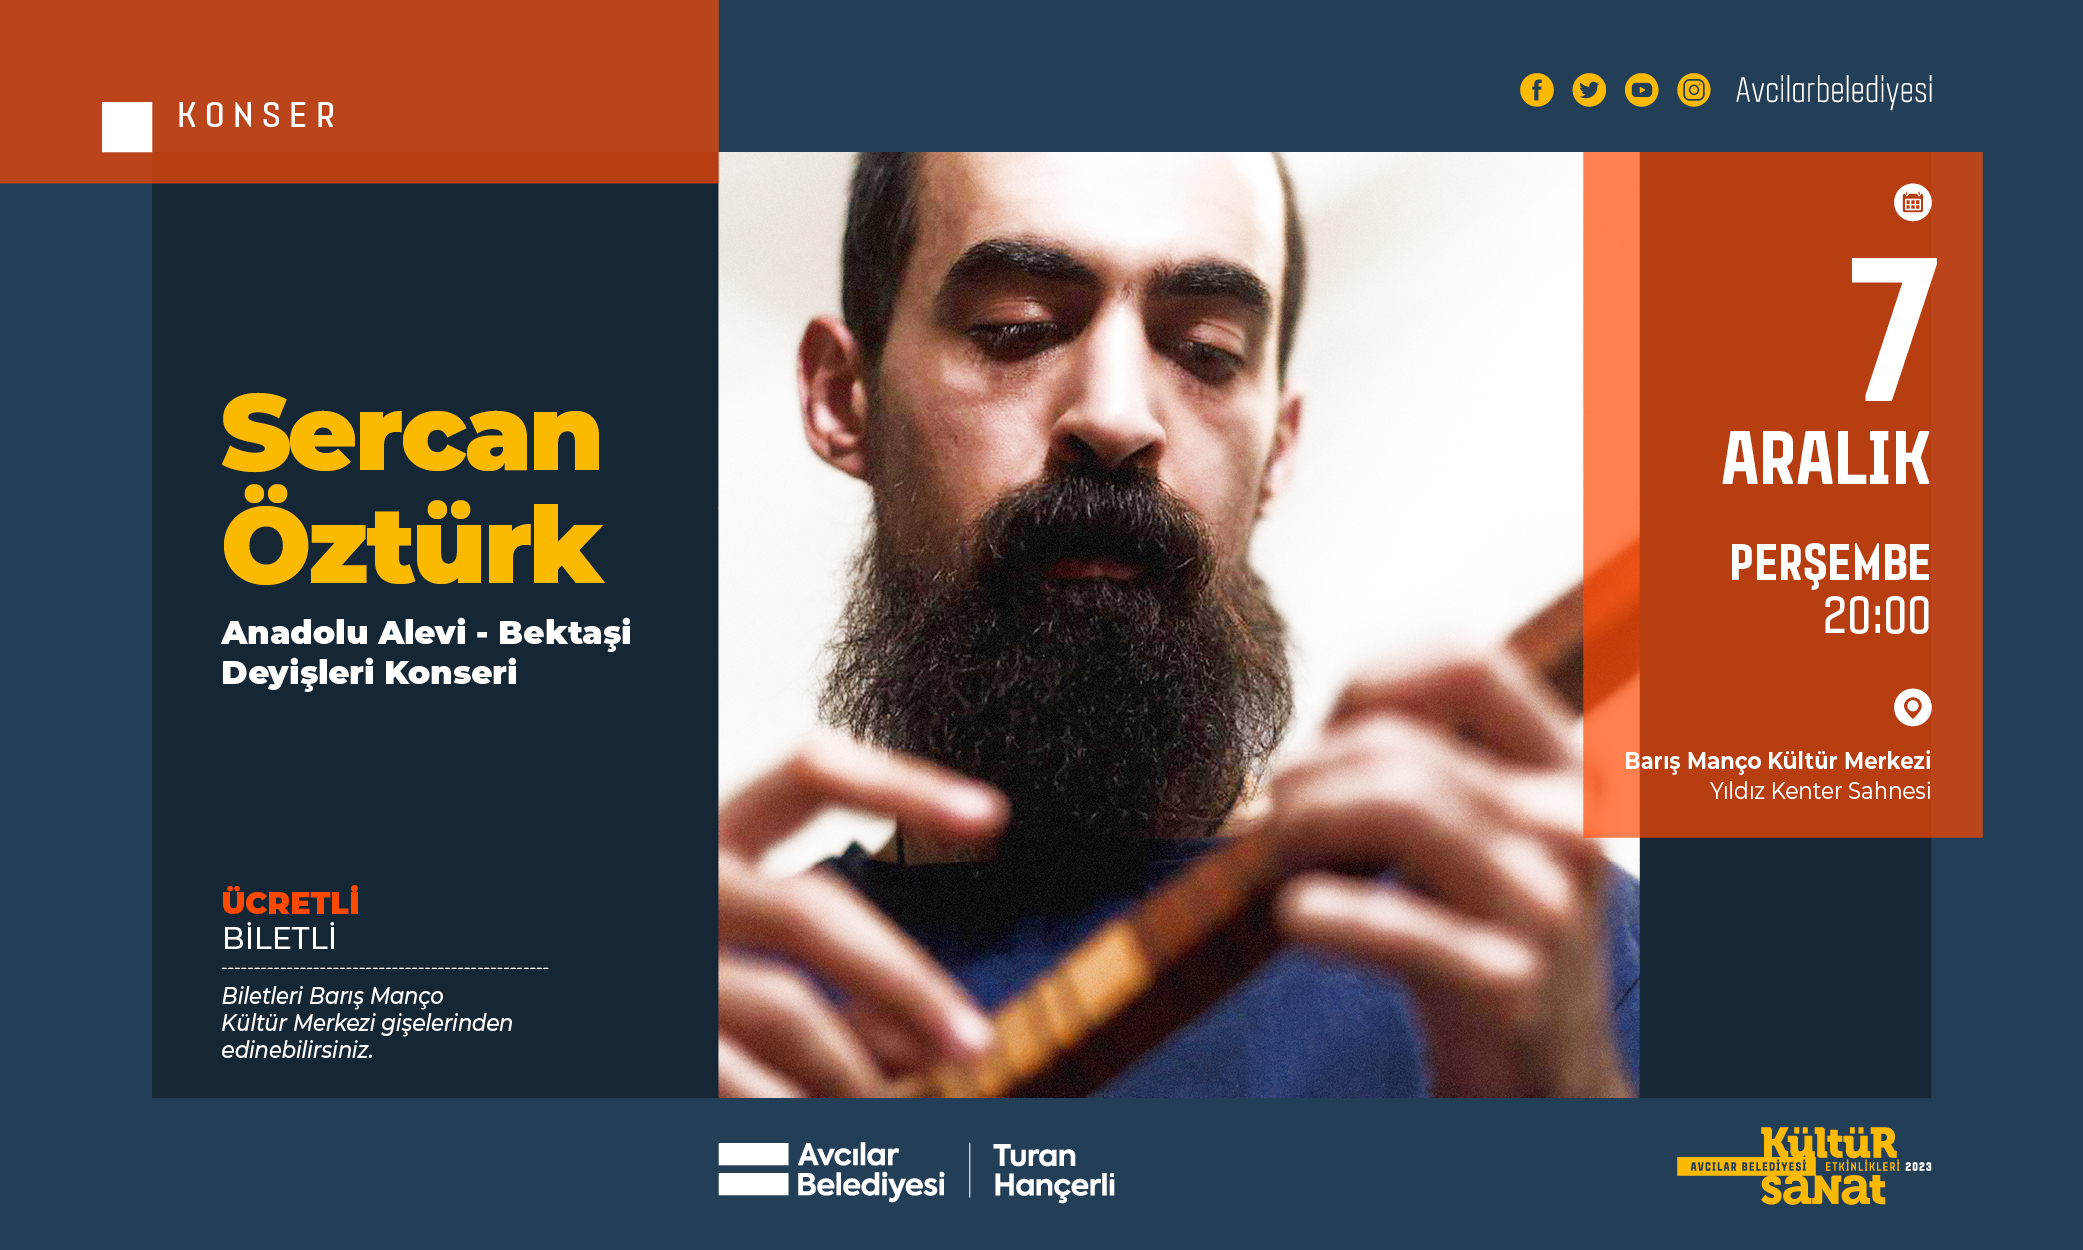 Sercan Öztürk Anadolu Alevi-Bektaşi Deyişleri Konseri